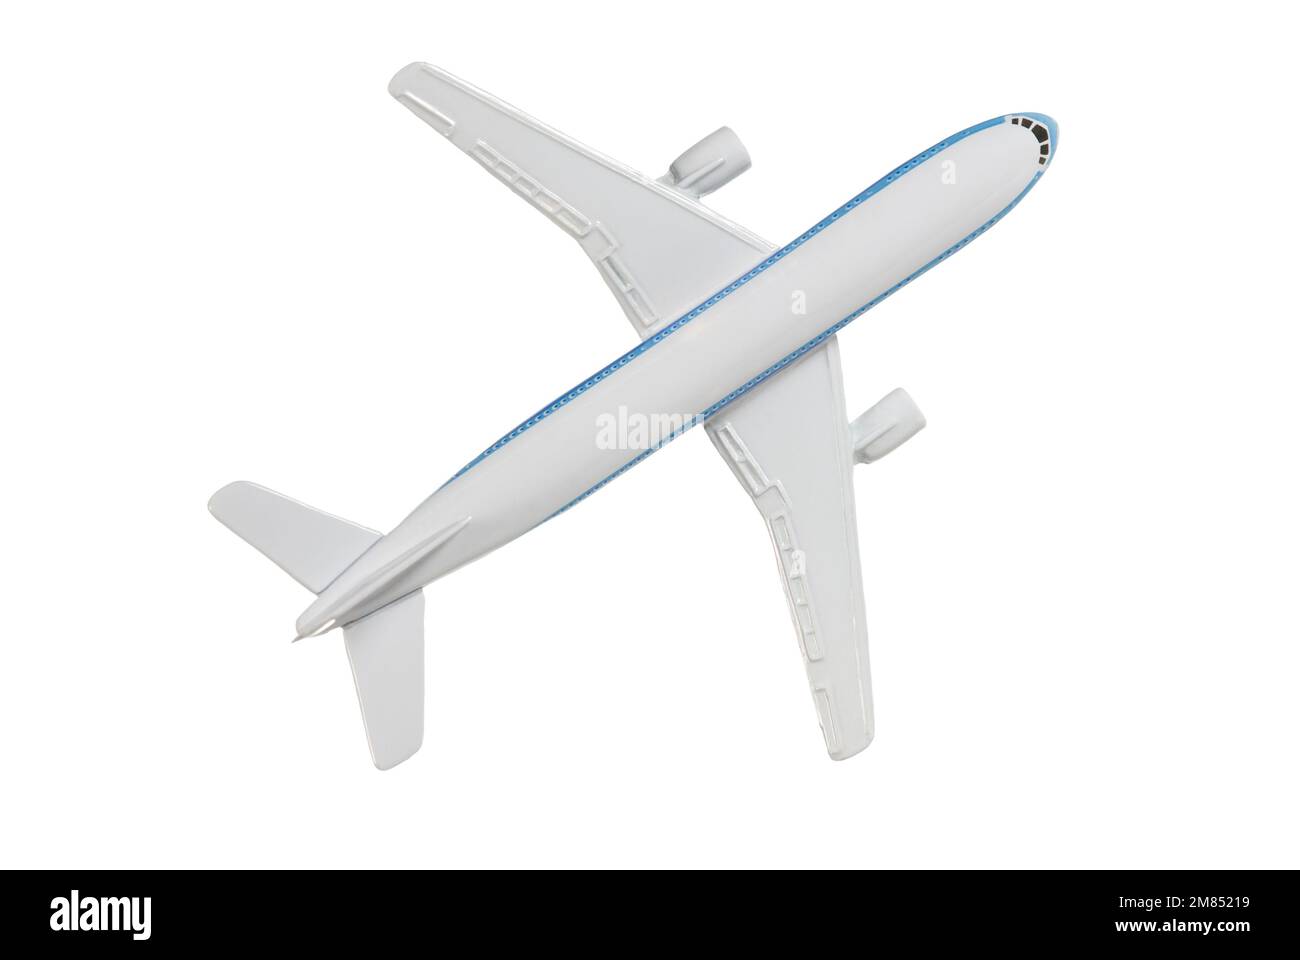 Model jet airplane on white Stock Photo